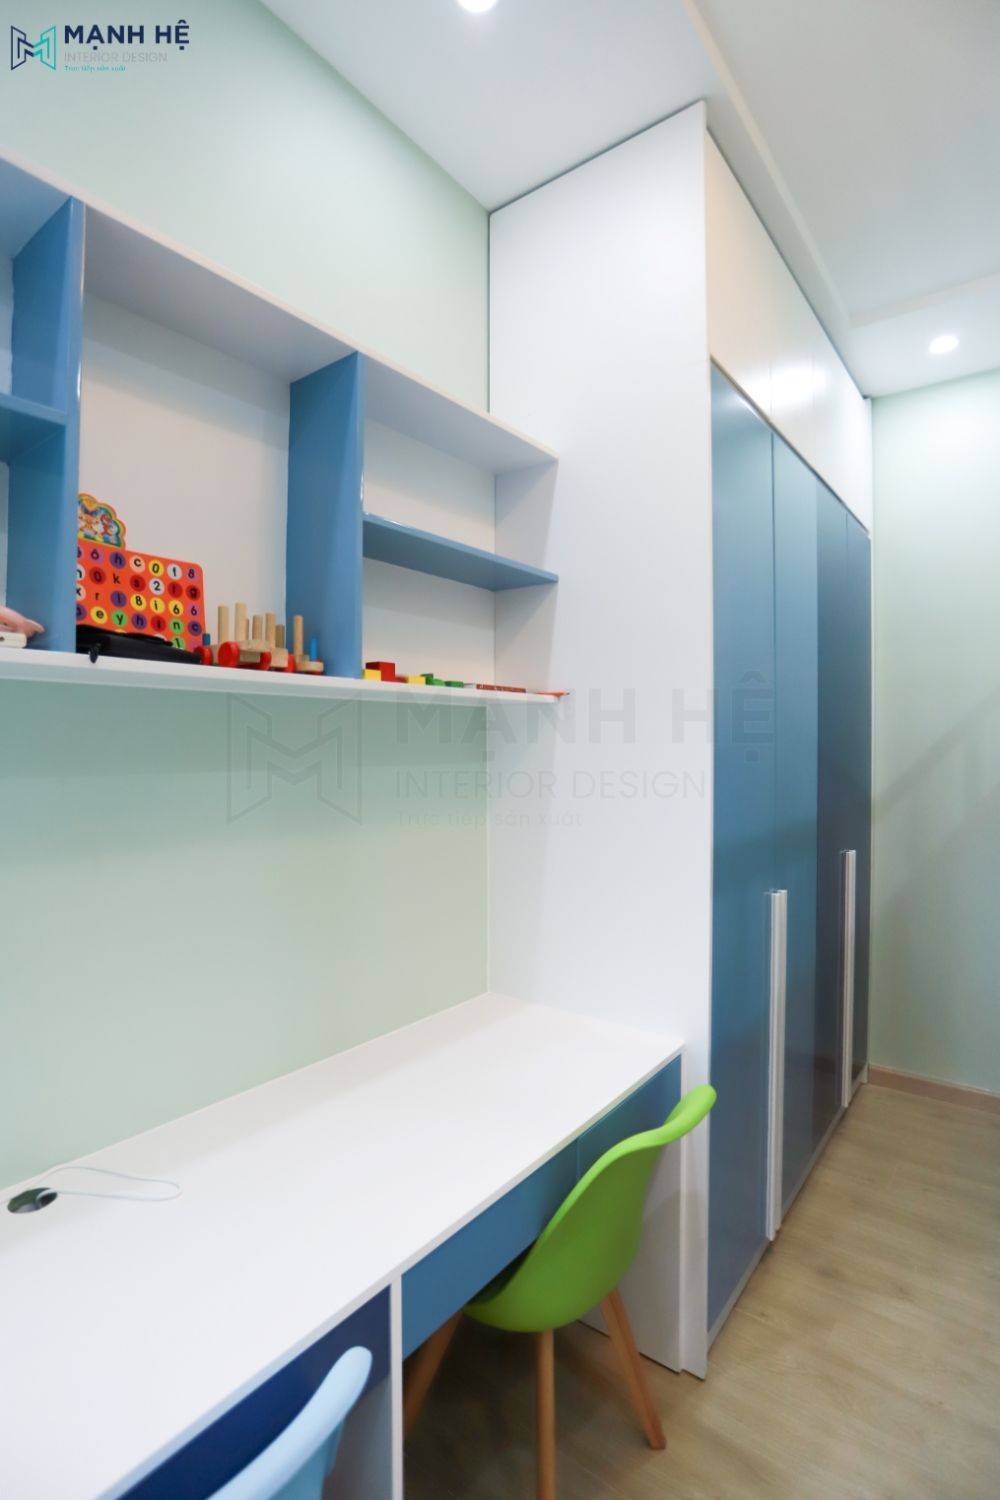 Hoàn thiện nội thất căn hộ Emerald Celadon 63m2 - Anh Vinh